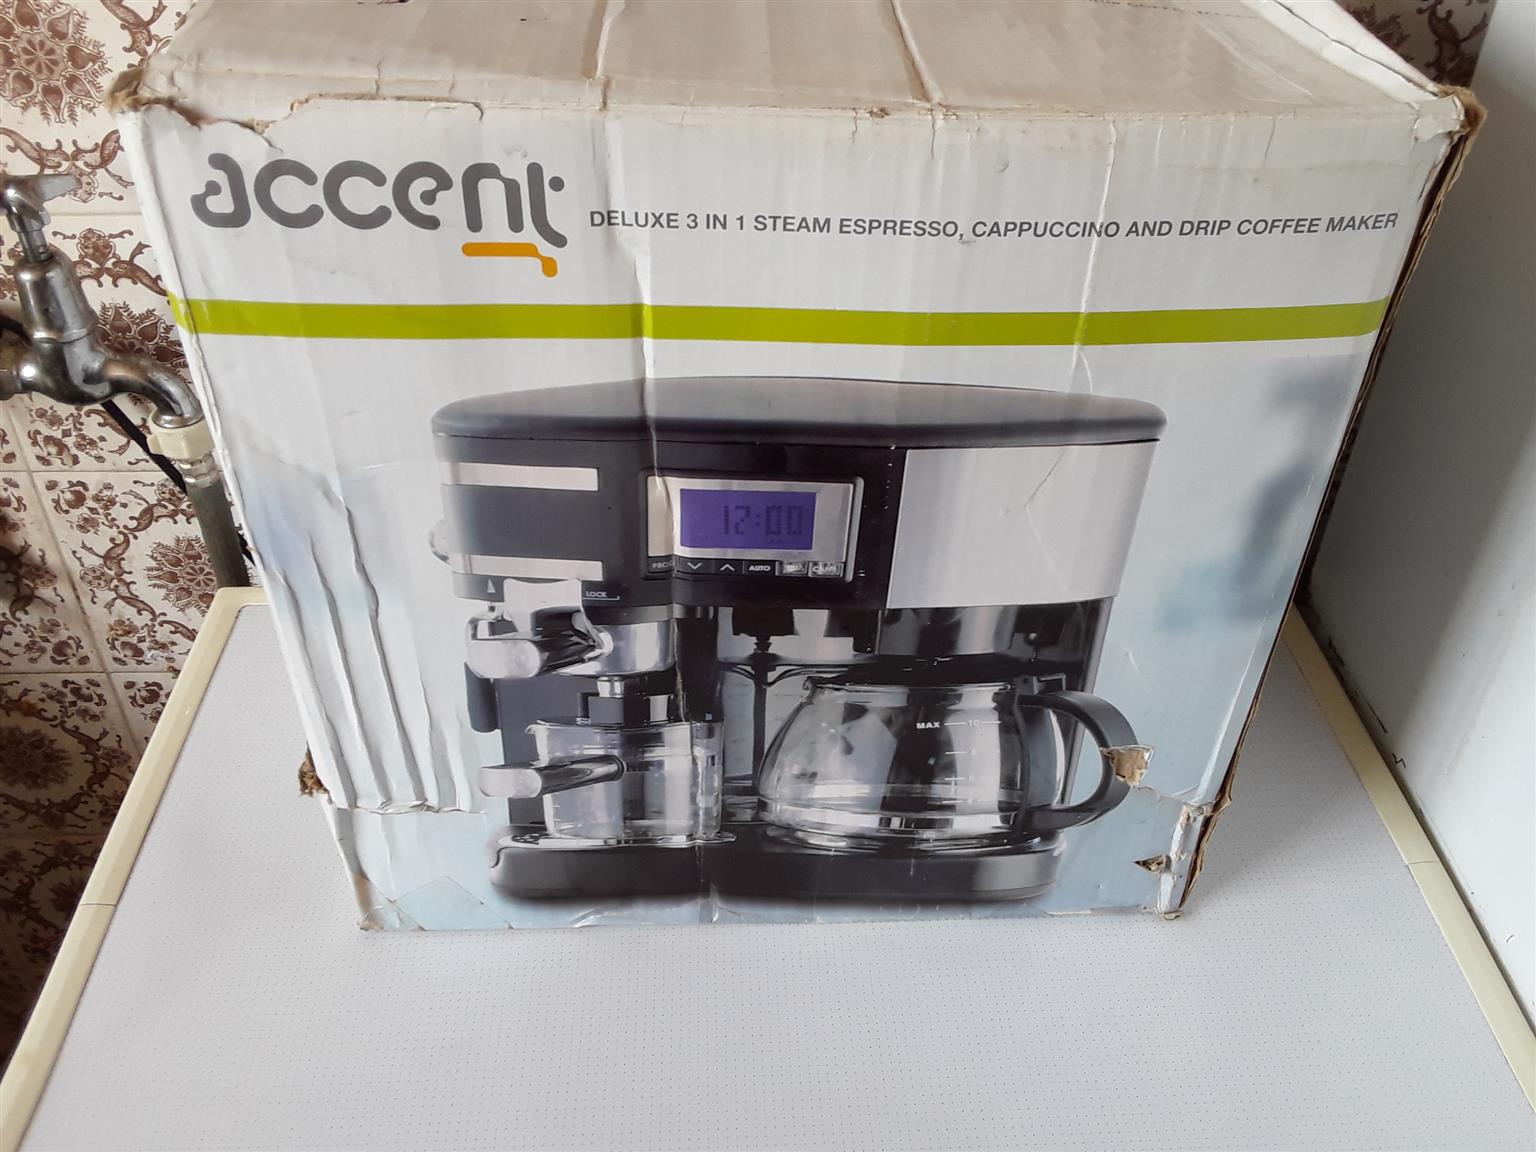 Coffee Machine Accent Deluxe, 3 in 1 Steam Espresso, Capuchino and Drip Coffee Maker. 